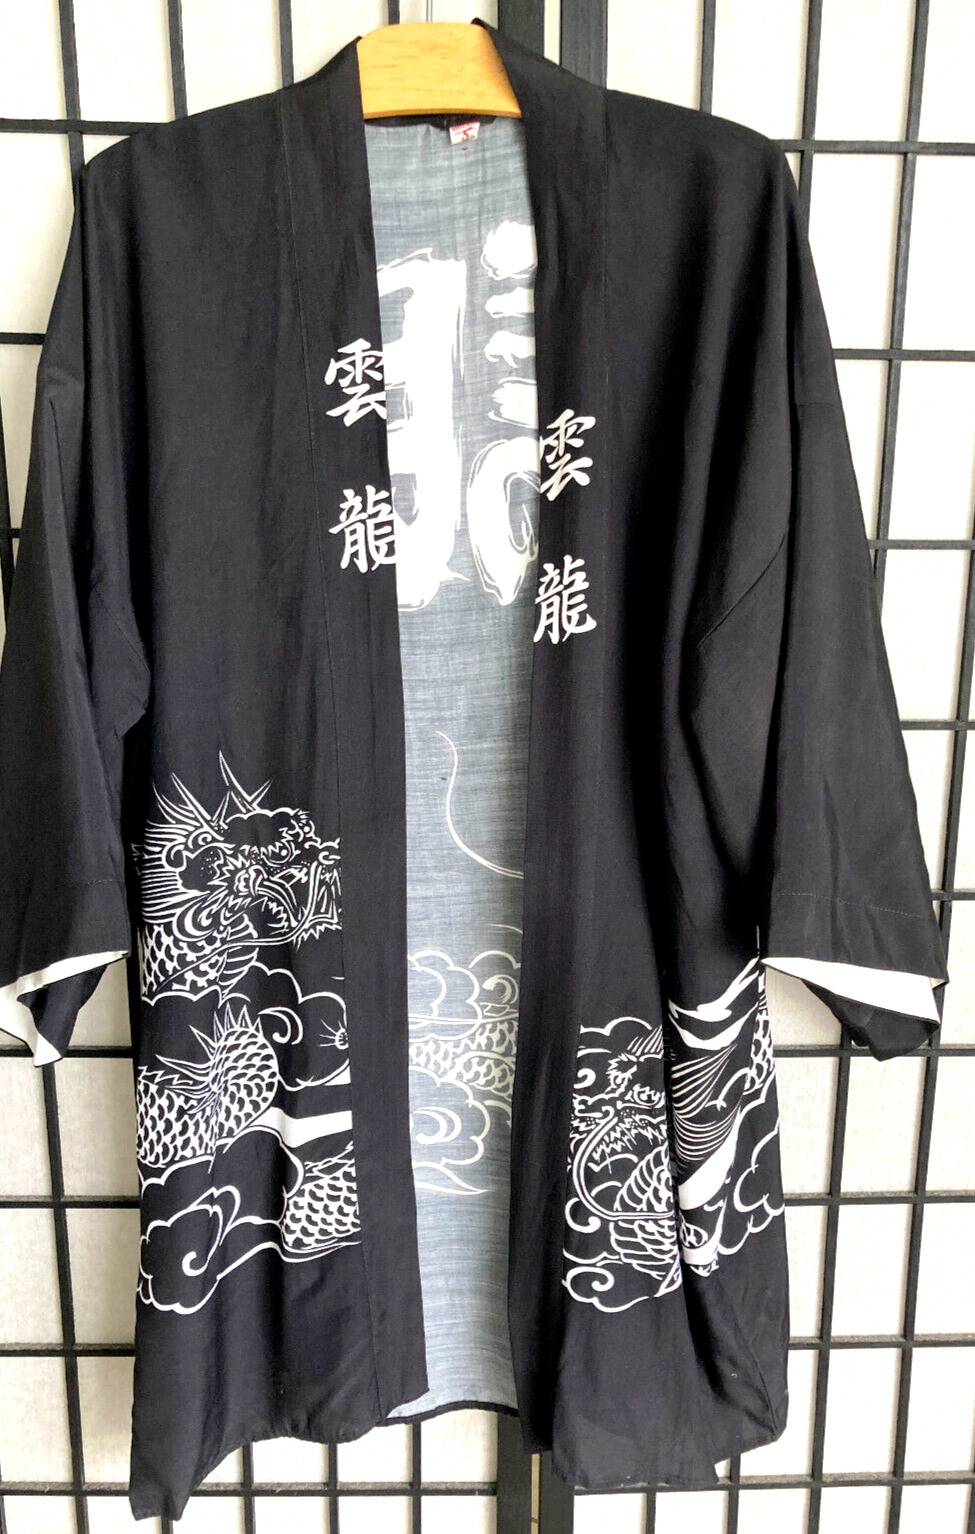 Vintage 70s Japanese Black with White Dragons Kimono 3/4 Sleeve Size OS